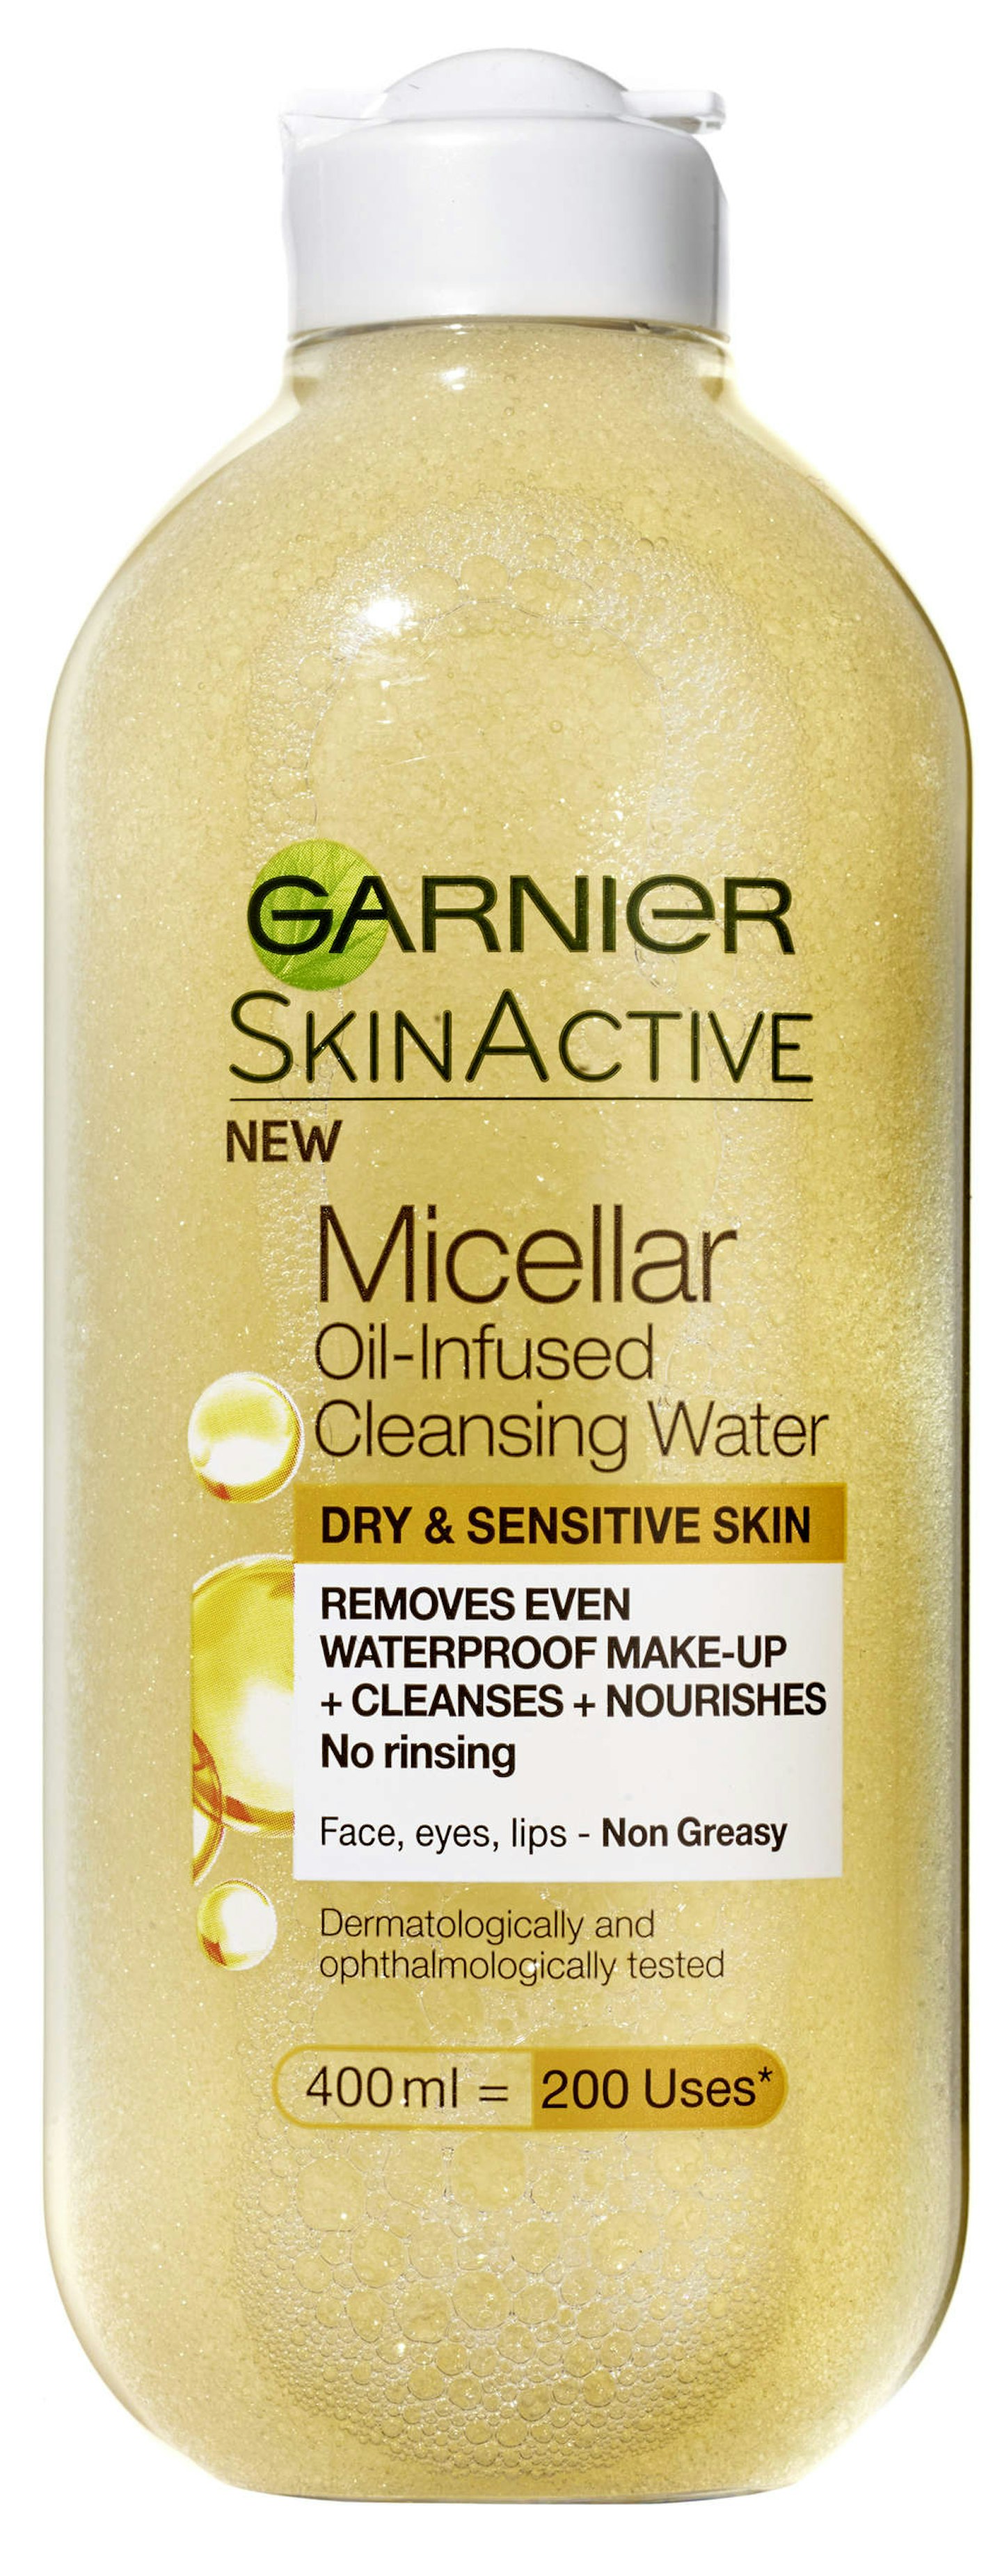 garnier-micellar-cleansing-water